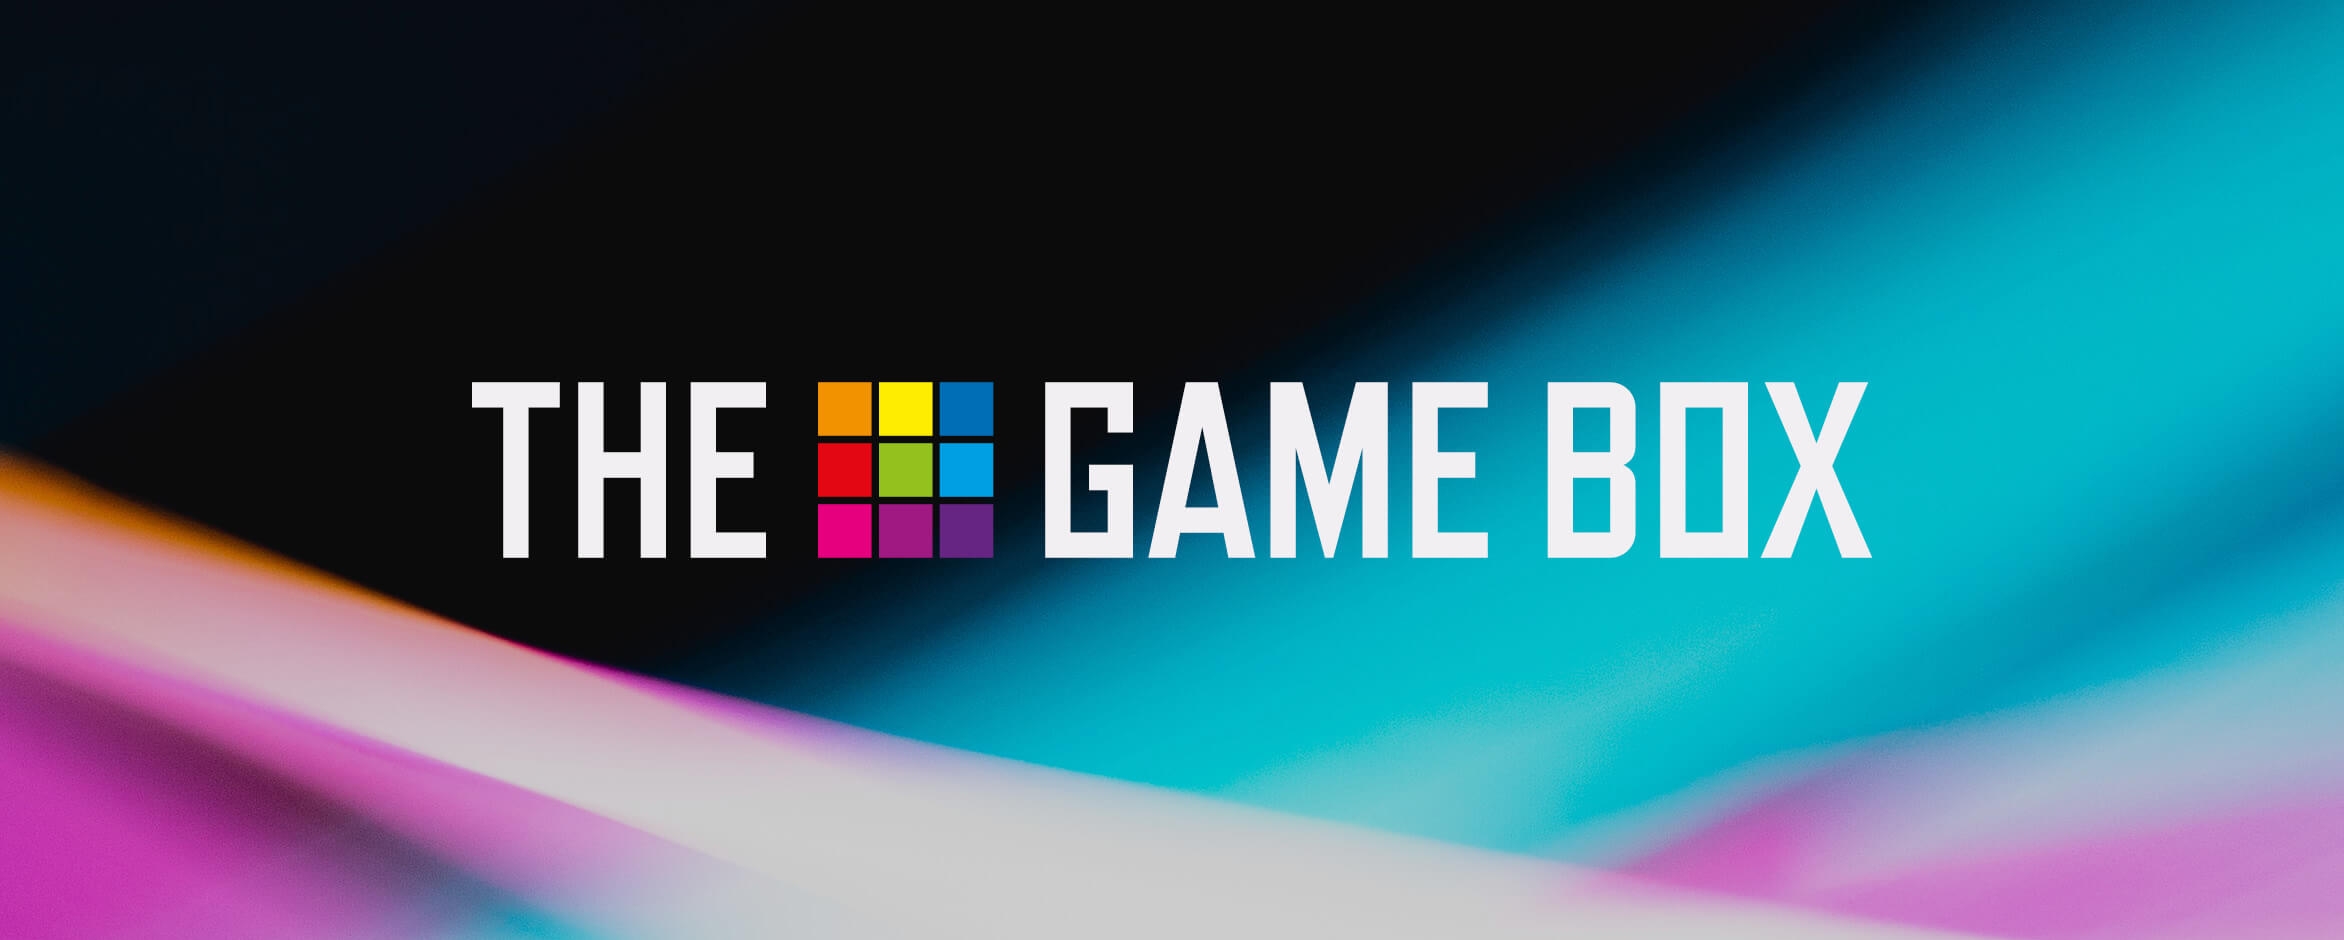 Het logo van The Game Box